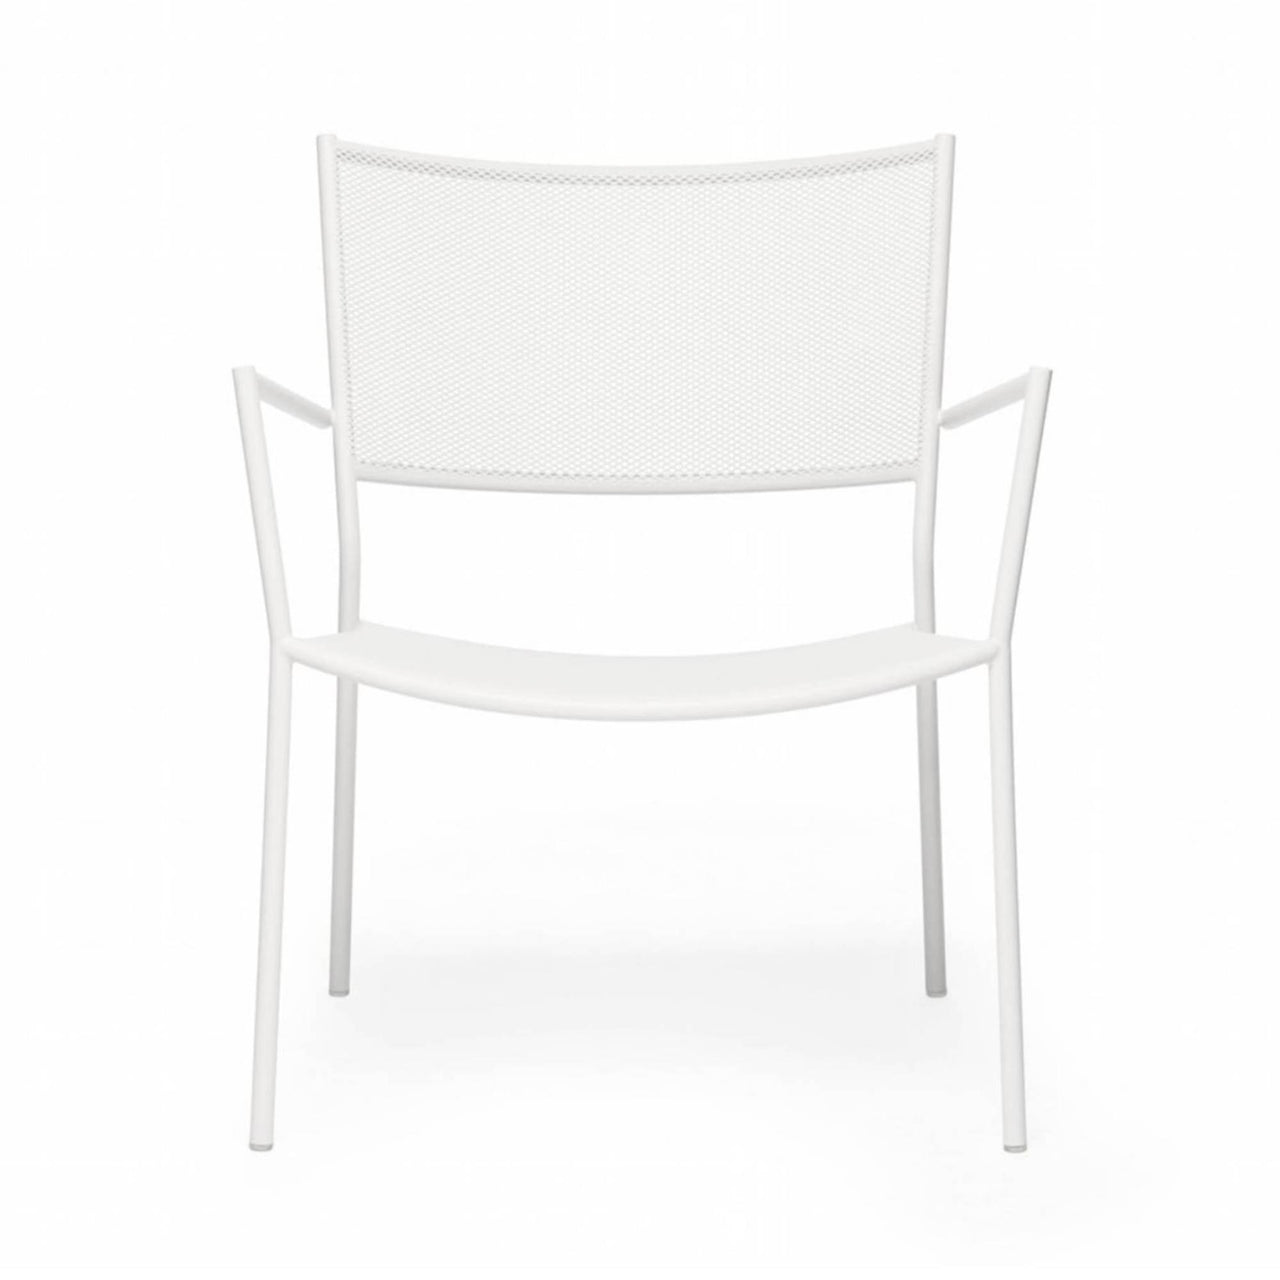 Jig Mesh Easy Chair: White